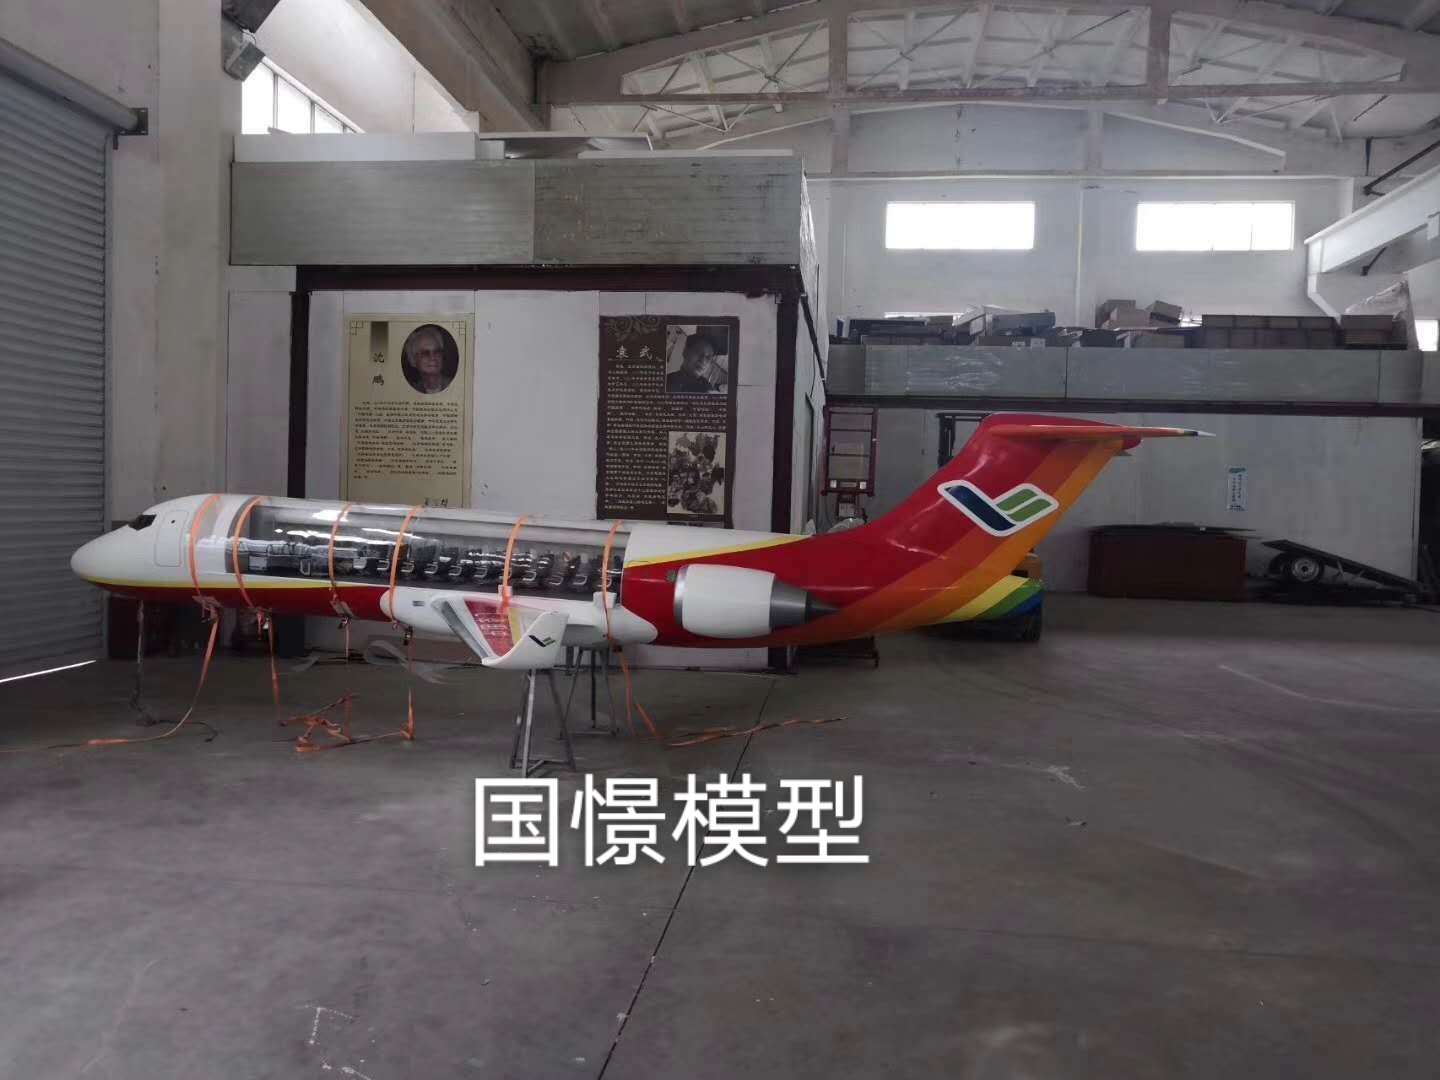 金塔县飞机模型